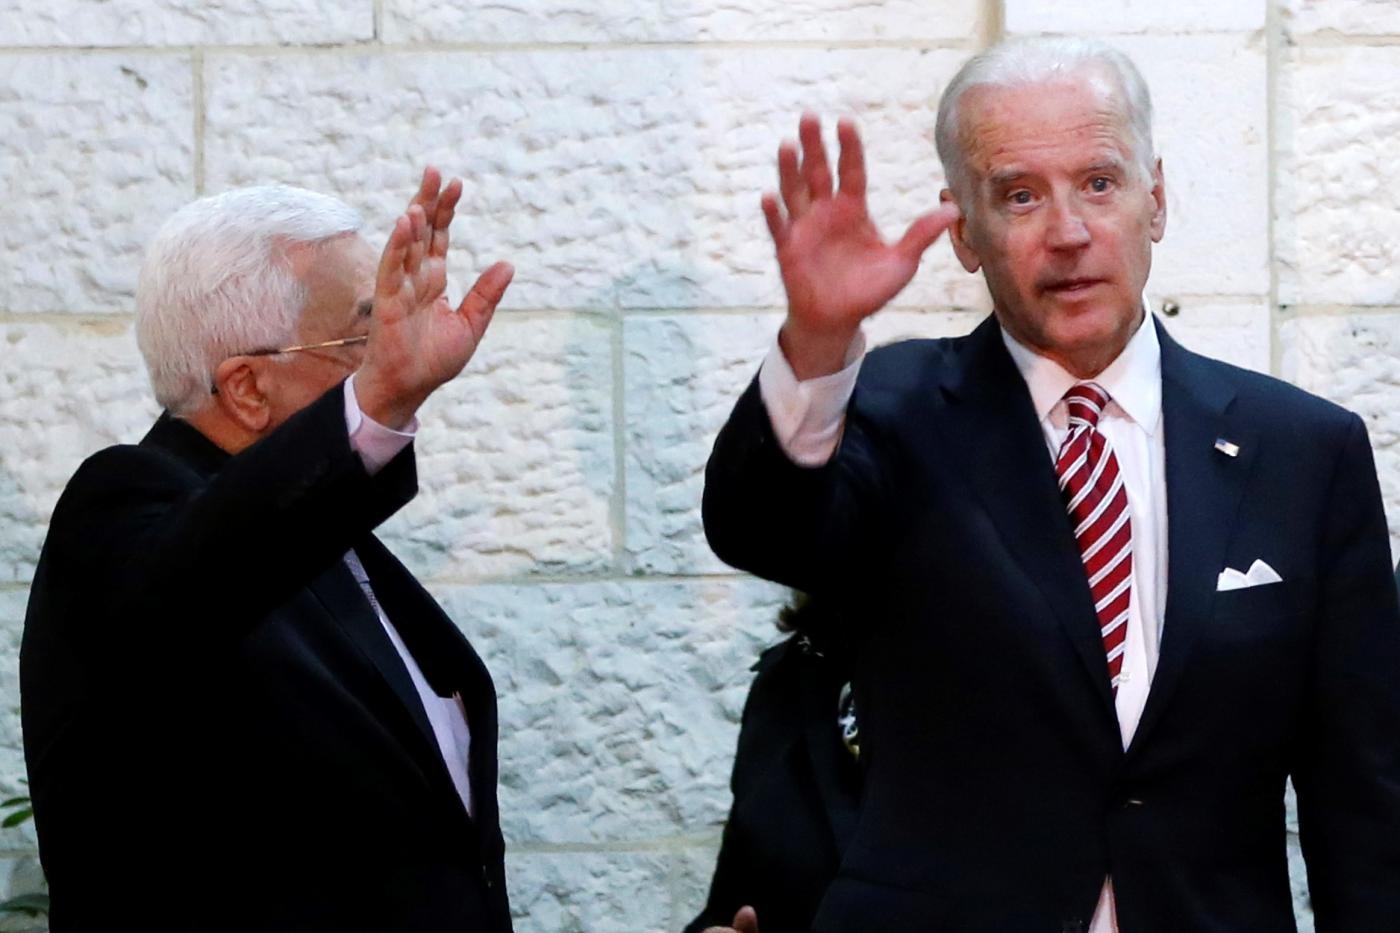 Joe Biden (à droite), alors vice-président des États-Unis, en compagnie du président palestinien Mahmoud Abbas le 9 mars 2016 à Ramallah, en Cisjordanie occupée (AFP)